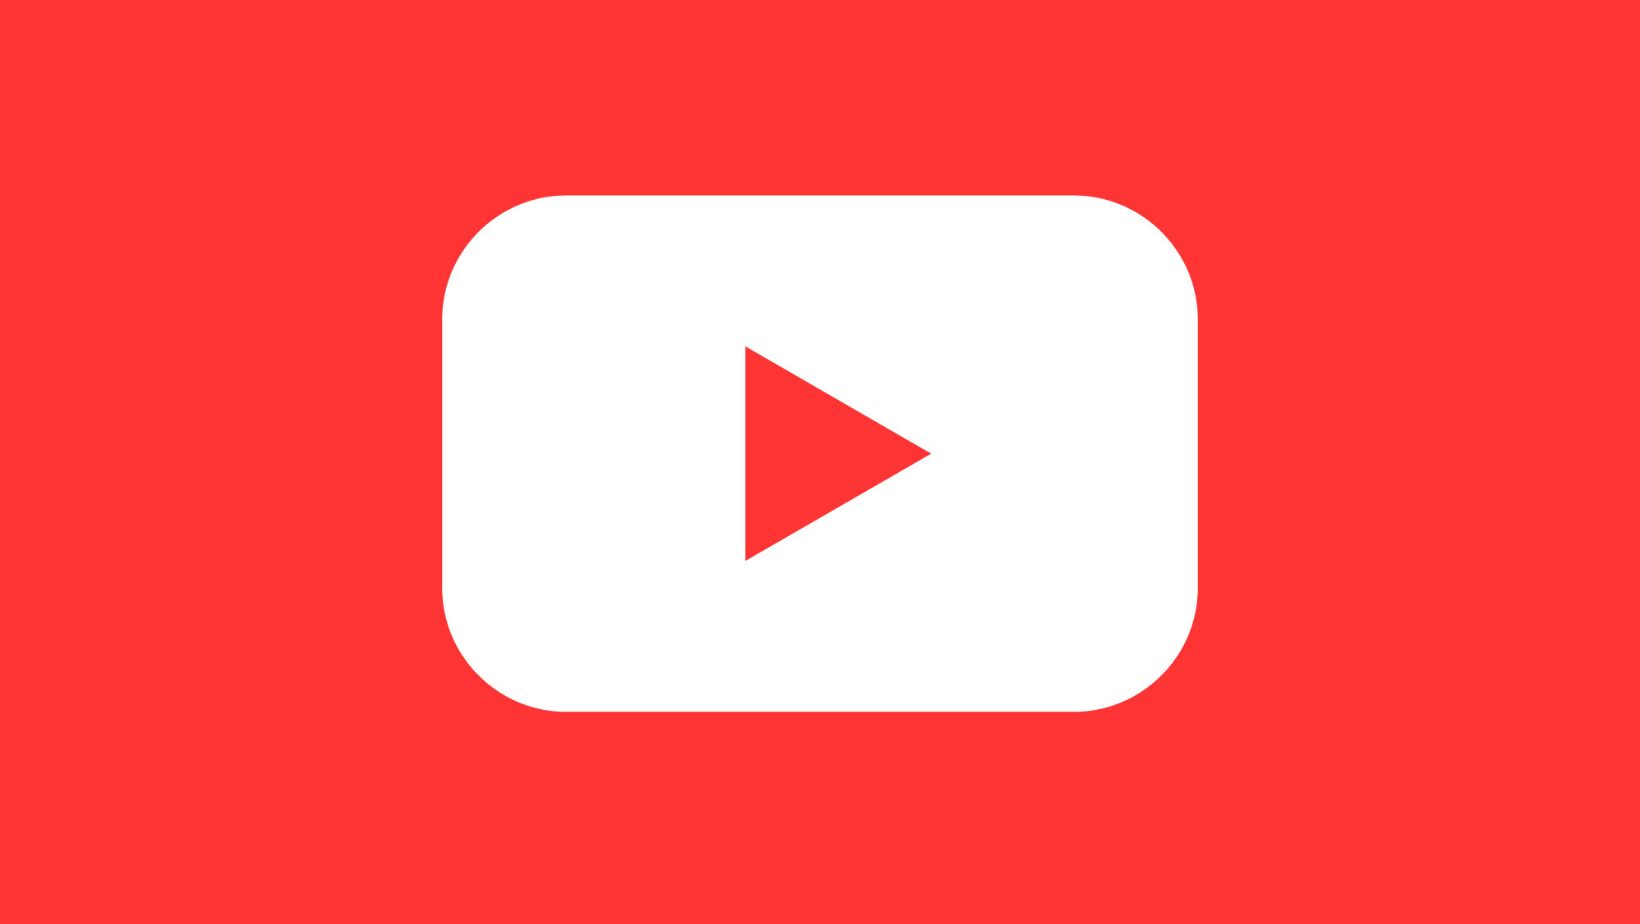 Ютуб revanced. Youtube revanced logo. Youtube revanced New icon. Youtube revanced. Youtube revanced premium